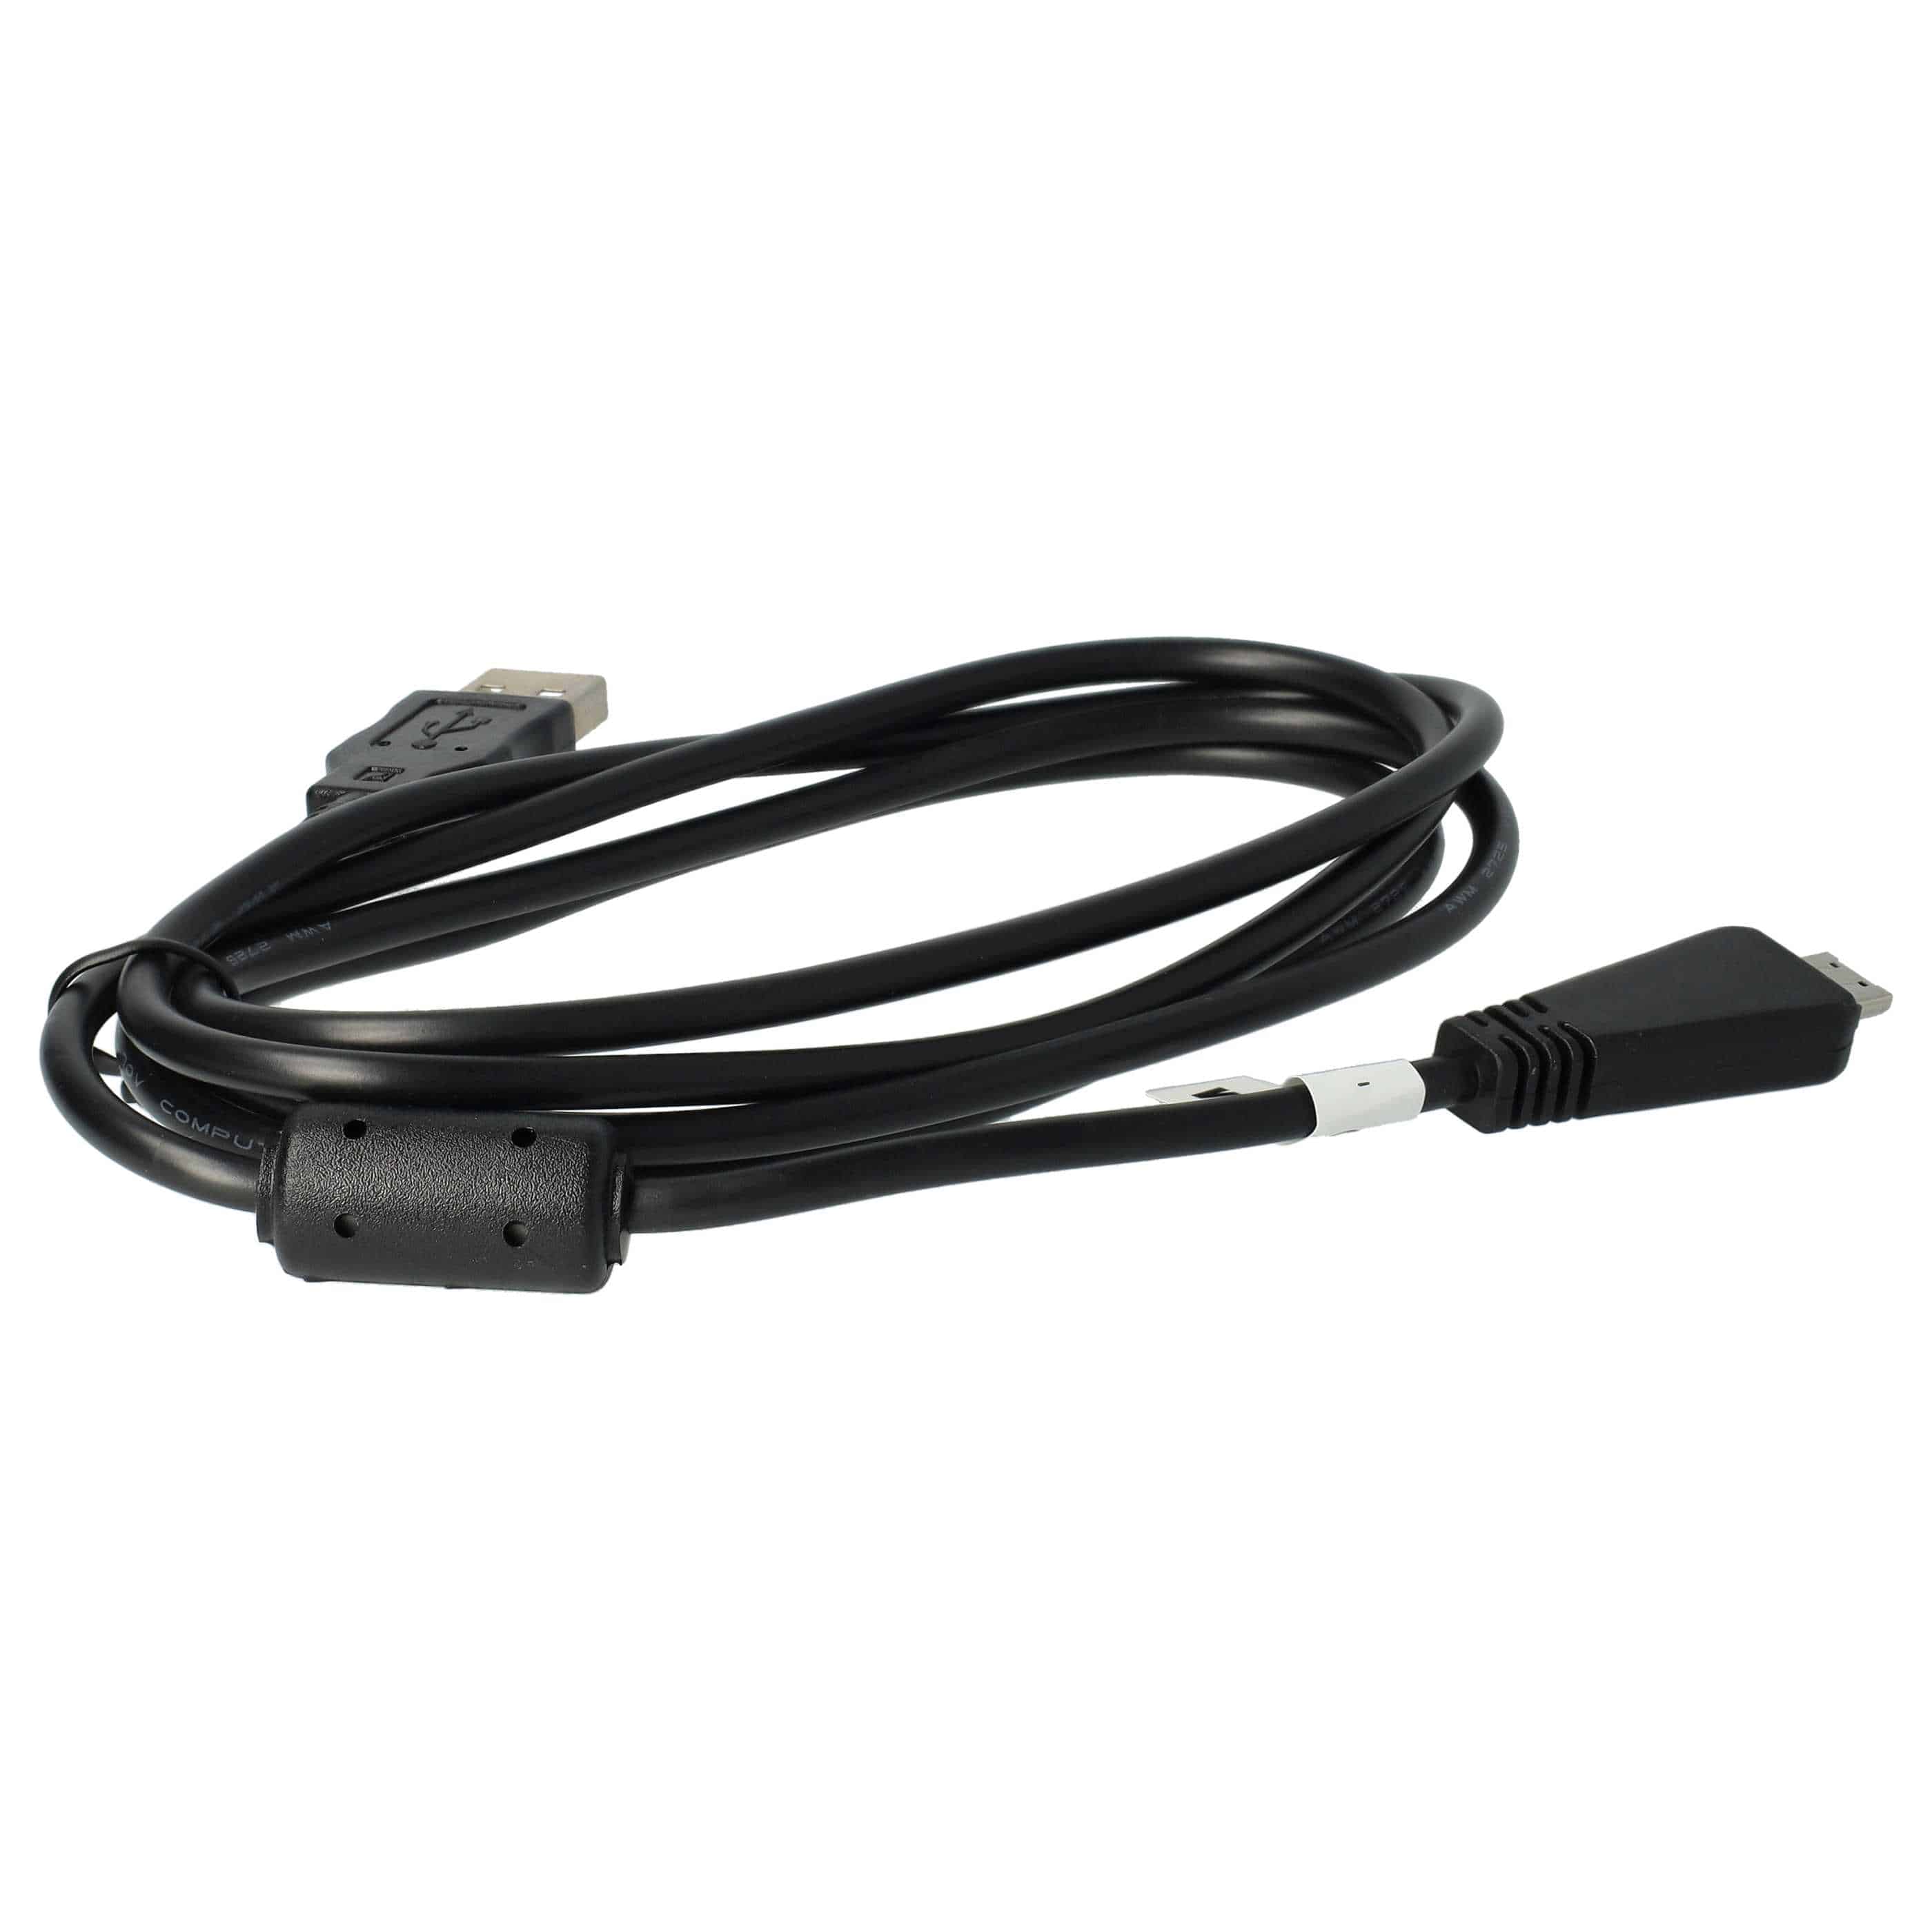 Cable de datos USB reemplaza Sony VMC-MD3 (sin función AV) para cámaras Sony - 150 cm